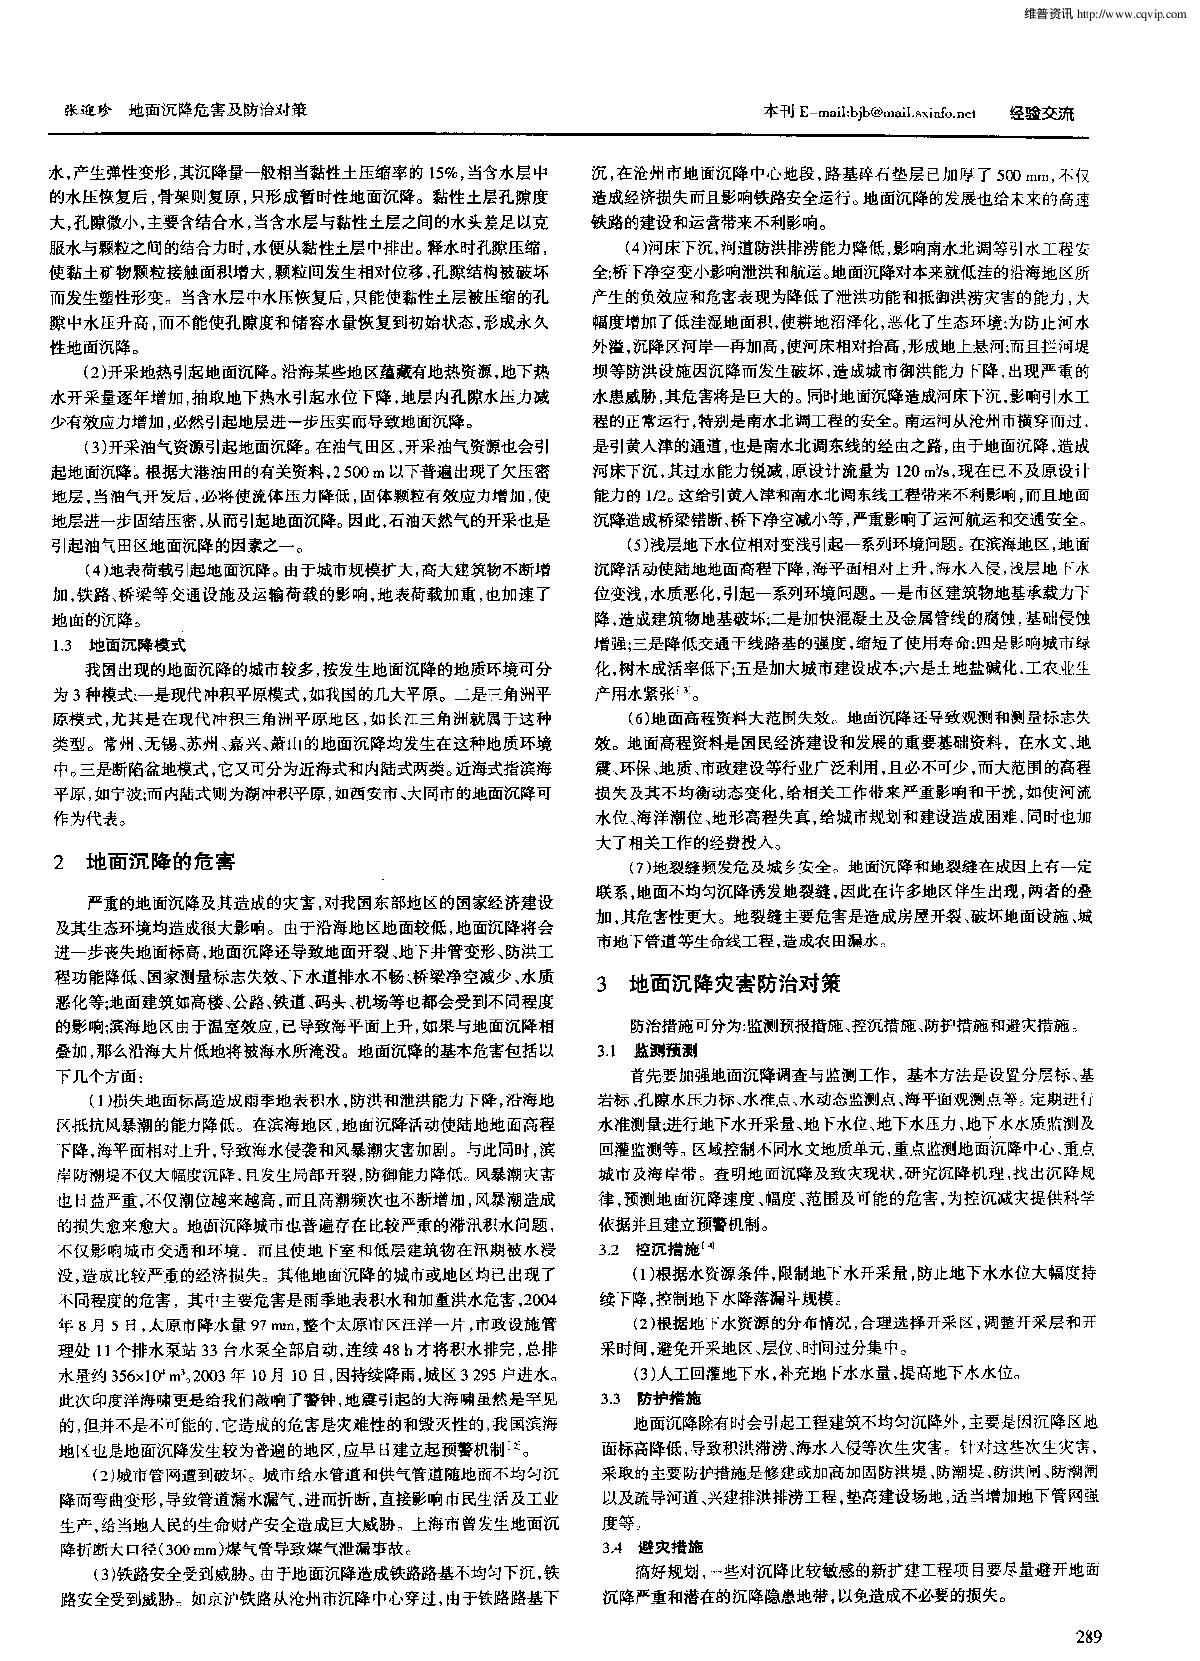 地面沉降危害及防治对策.pdf-图二